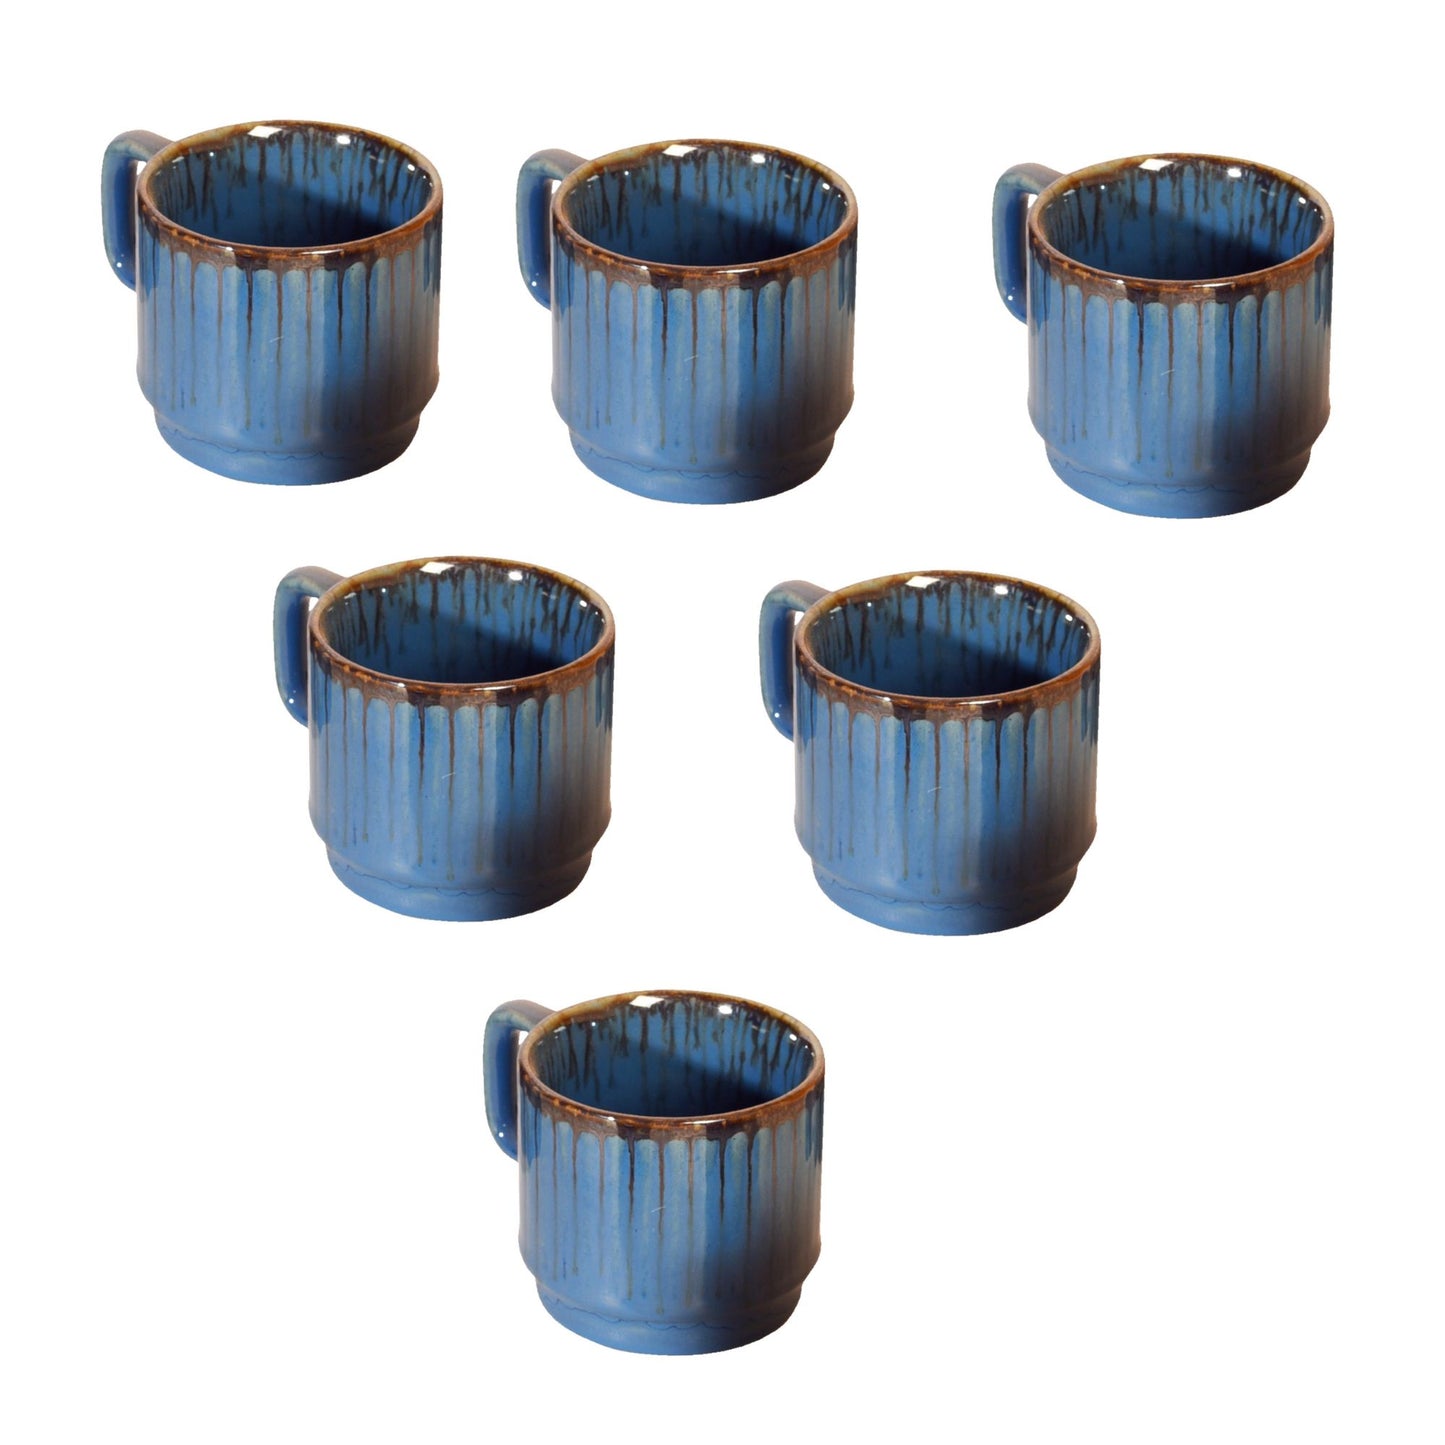 Cerulian Stripes Tea Cups (Set of 6